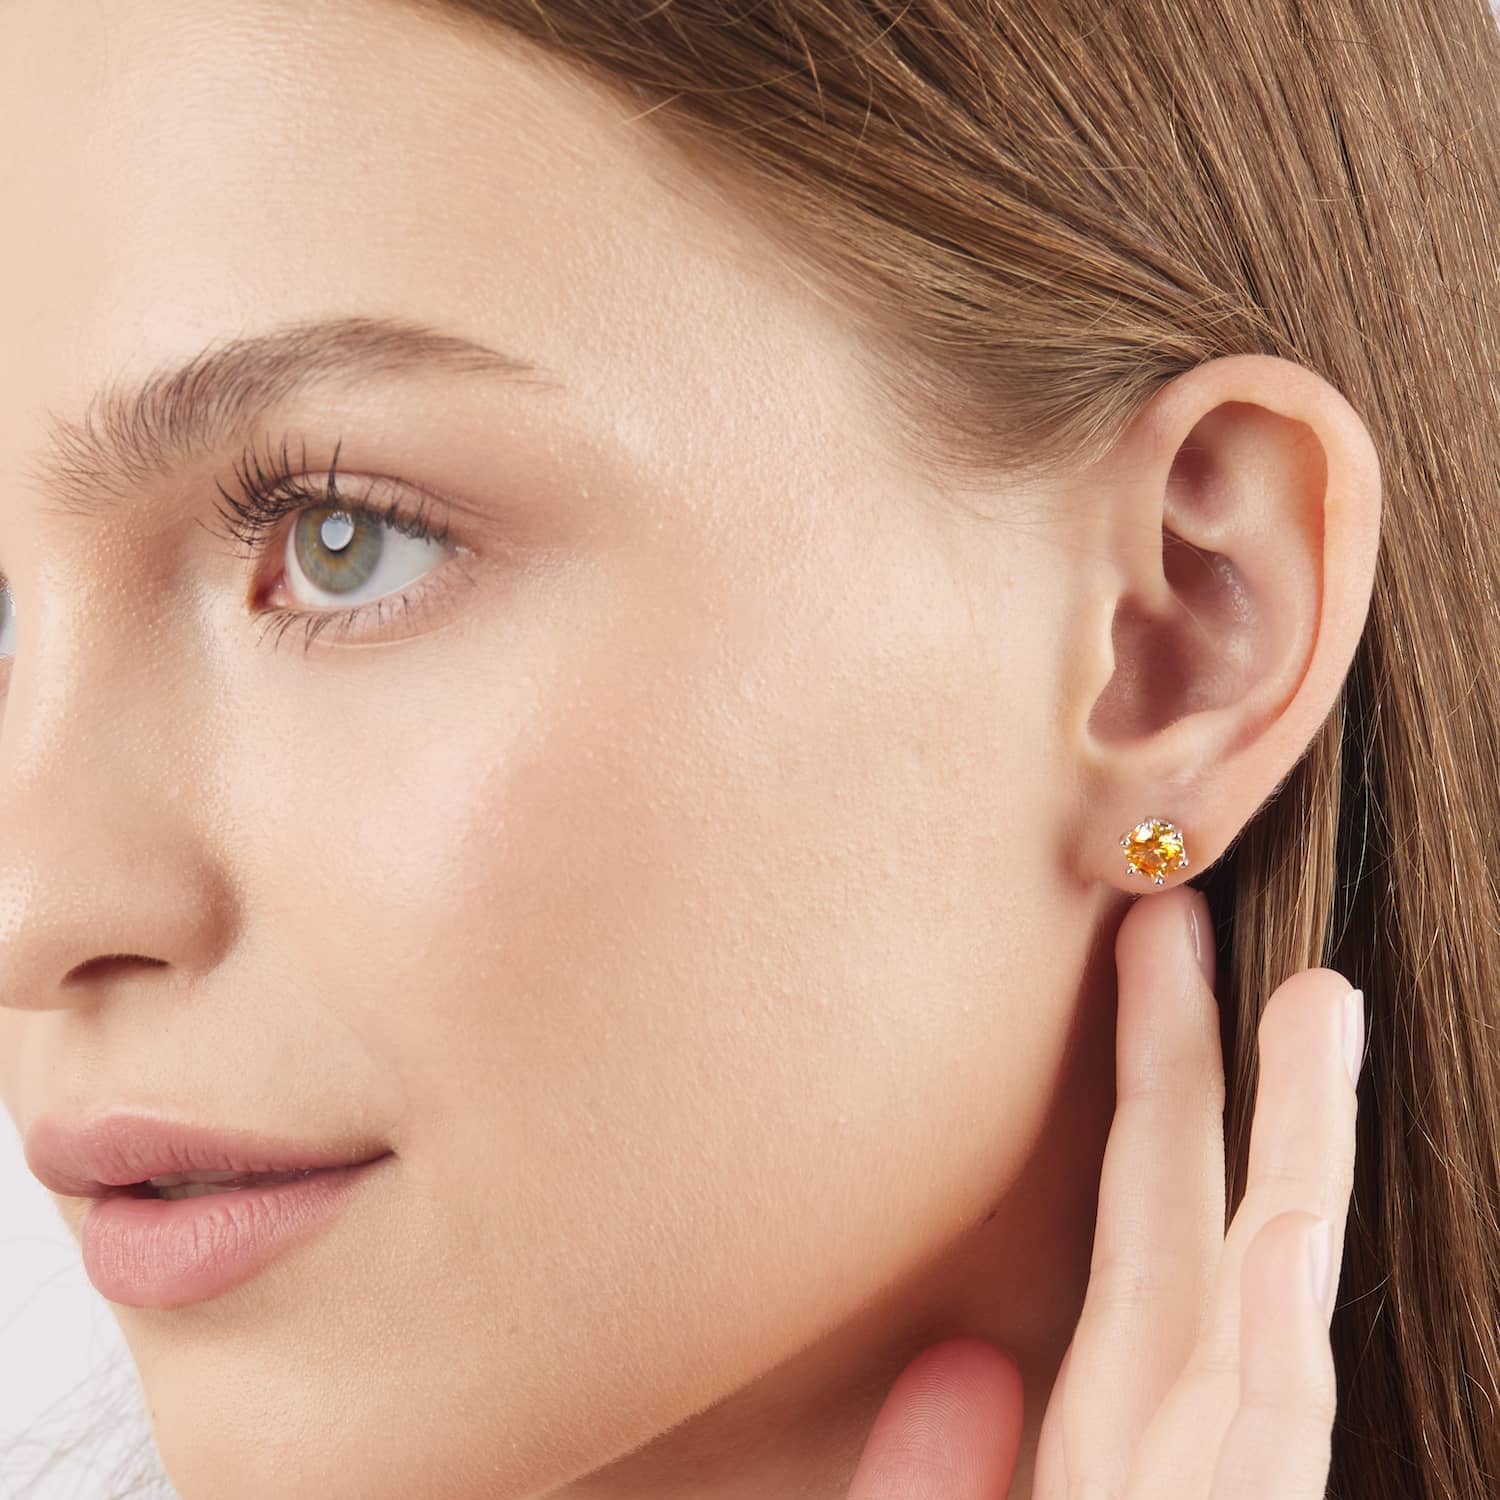 Model wearing the 1 carat moissanite stud earrings in yellow